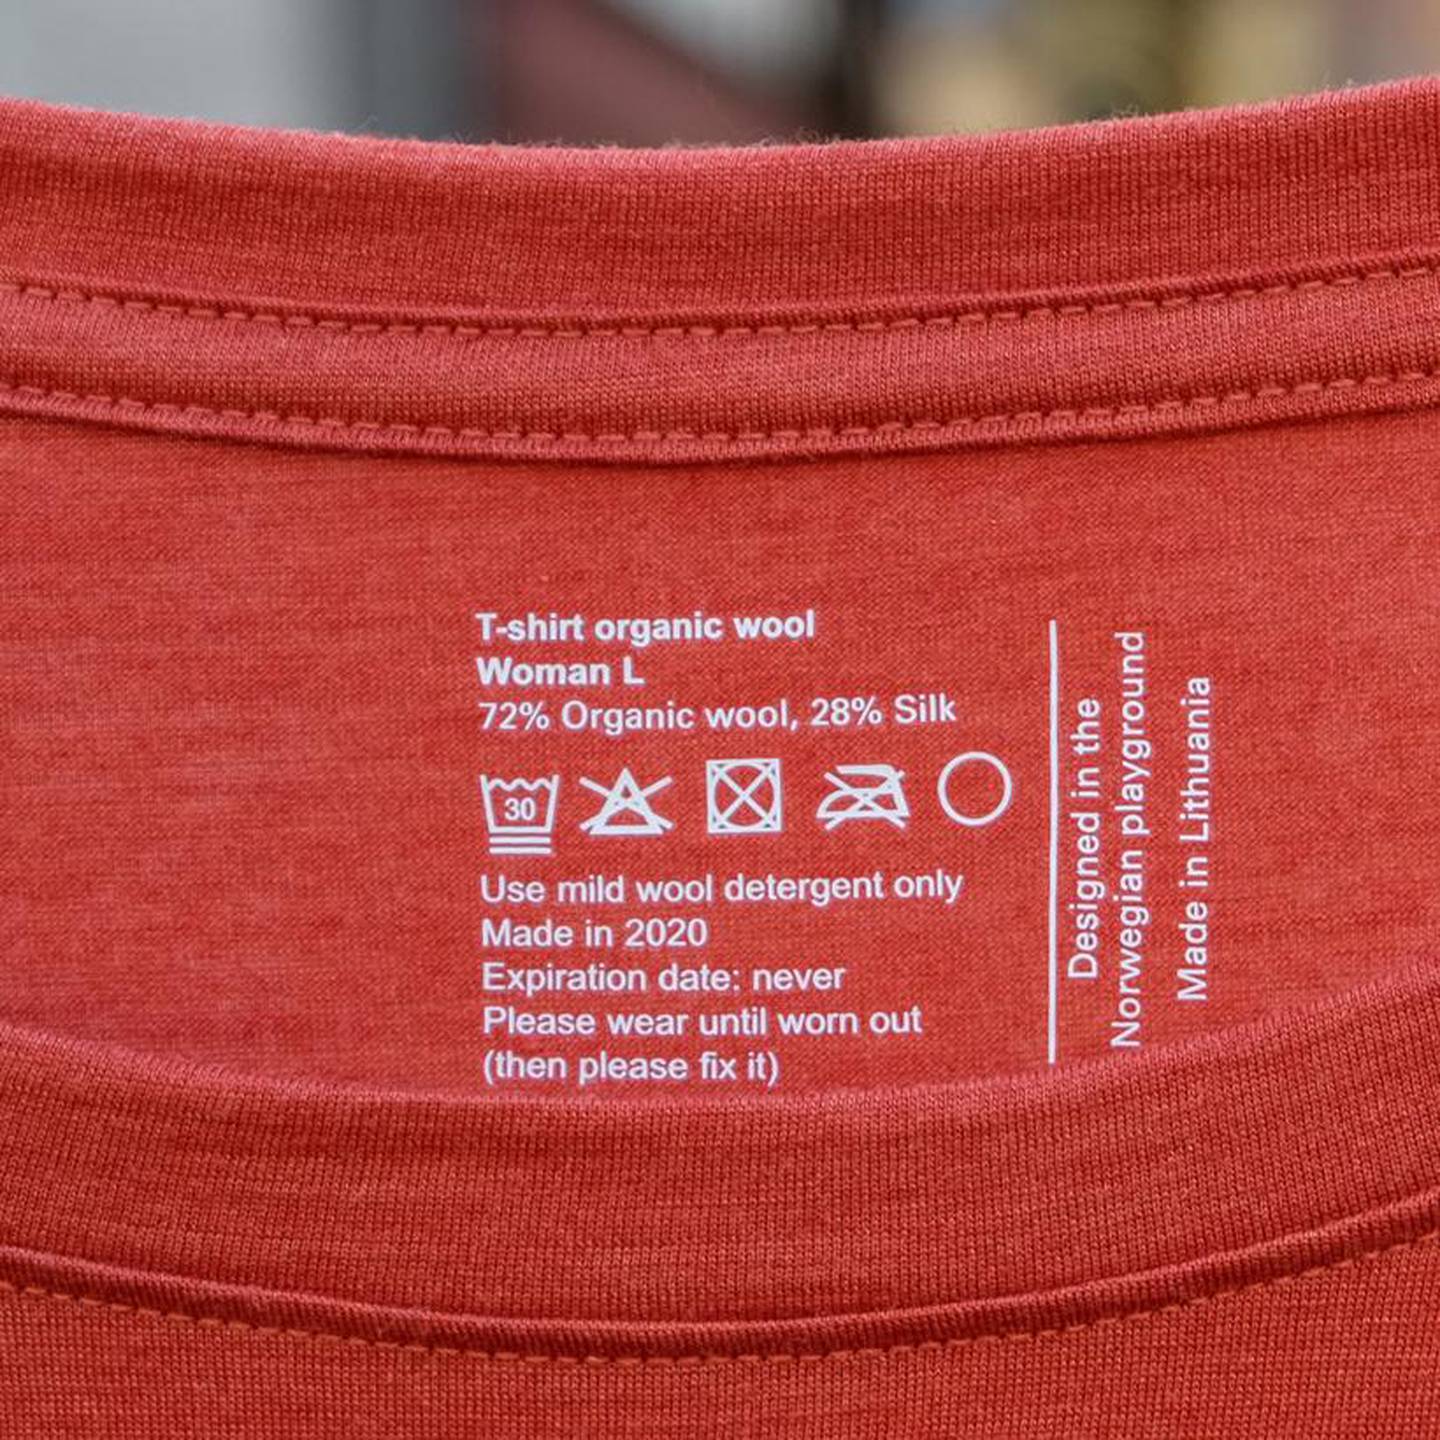 "Utløpsdato: aldri" står det på denne genseren. Det oppfrores også til å bruke den til den er utslitt og deretter reparere den.